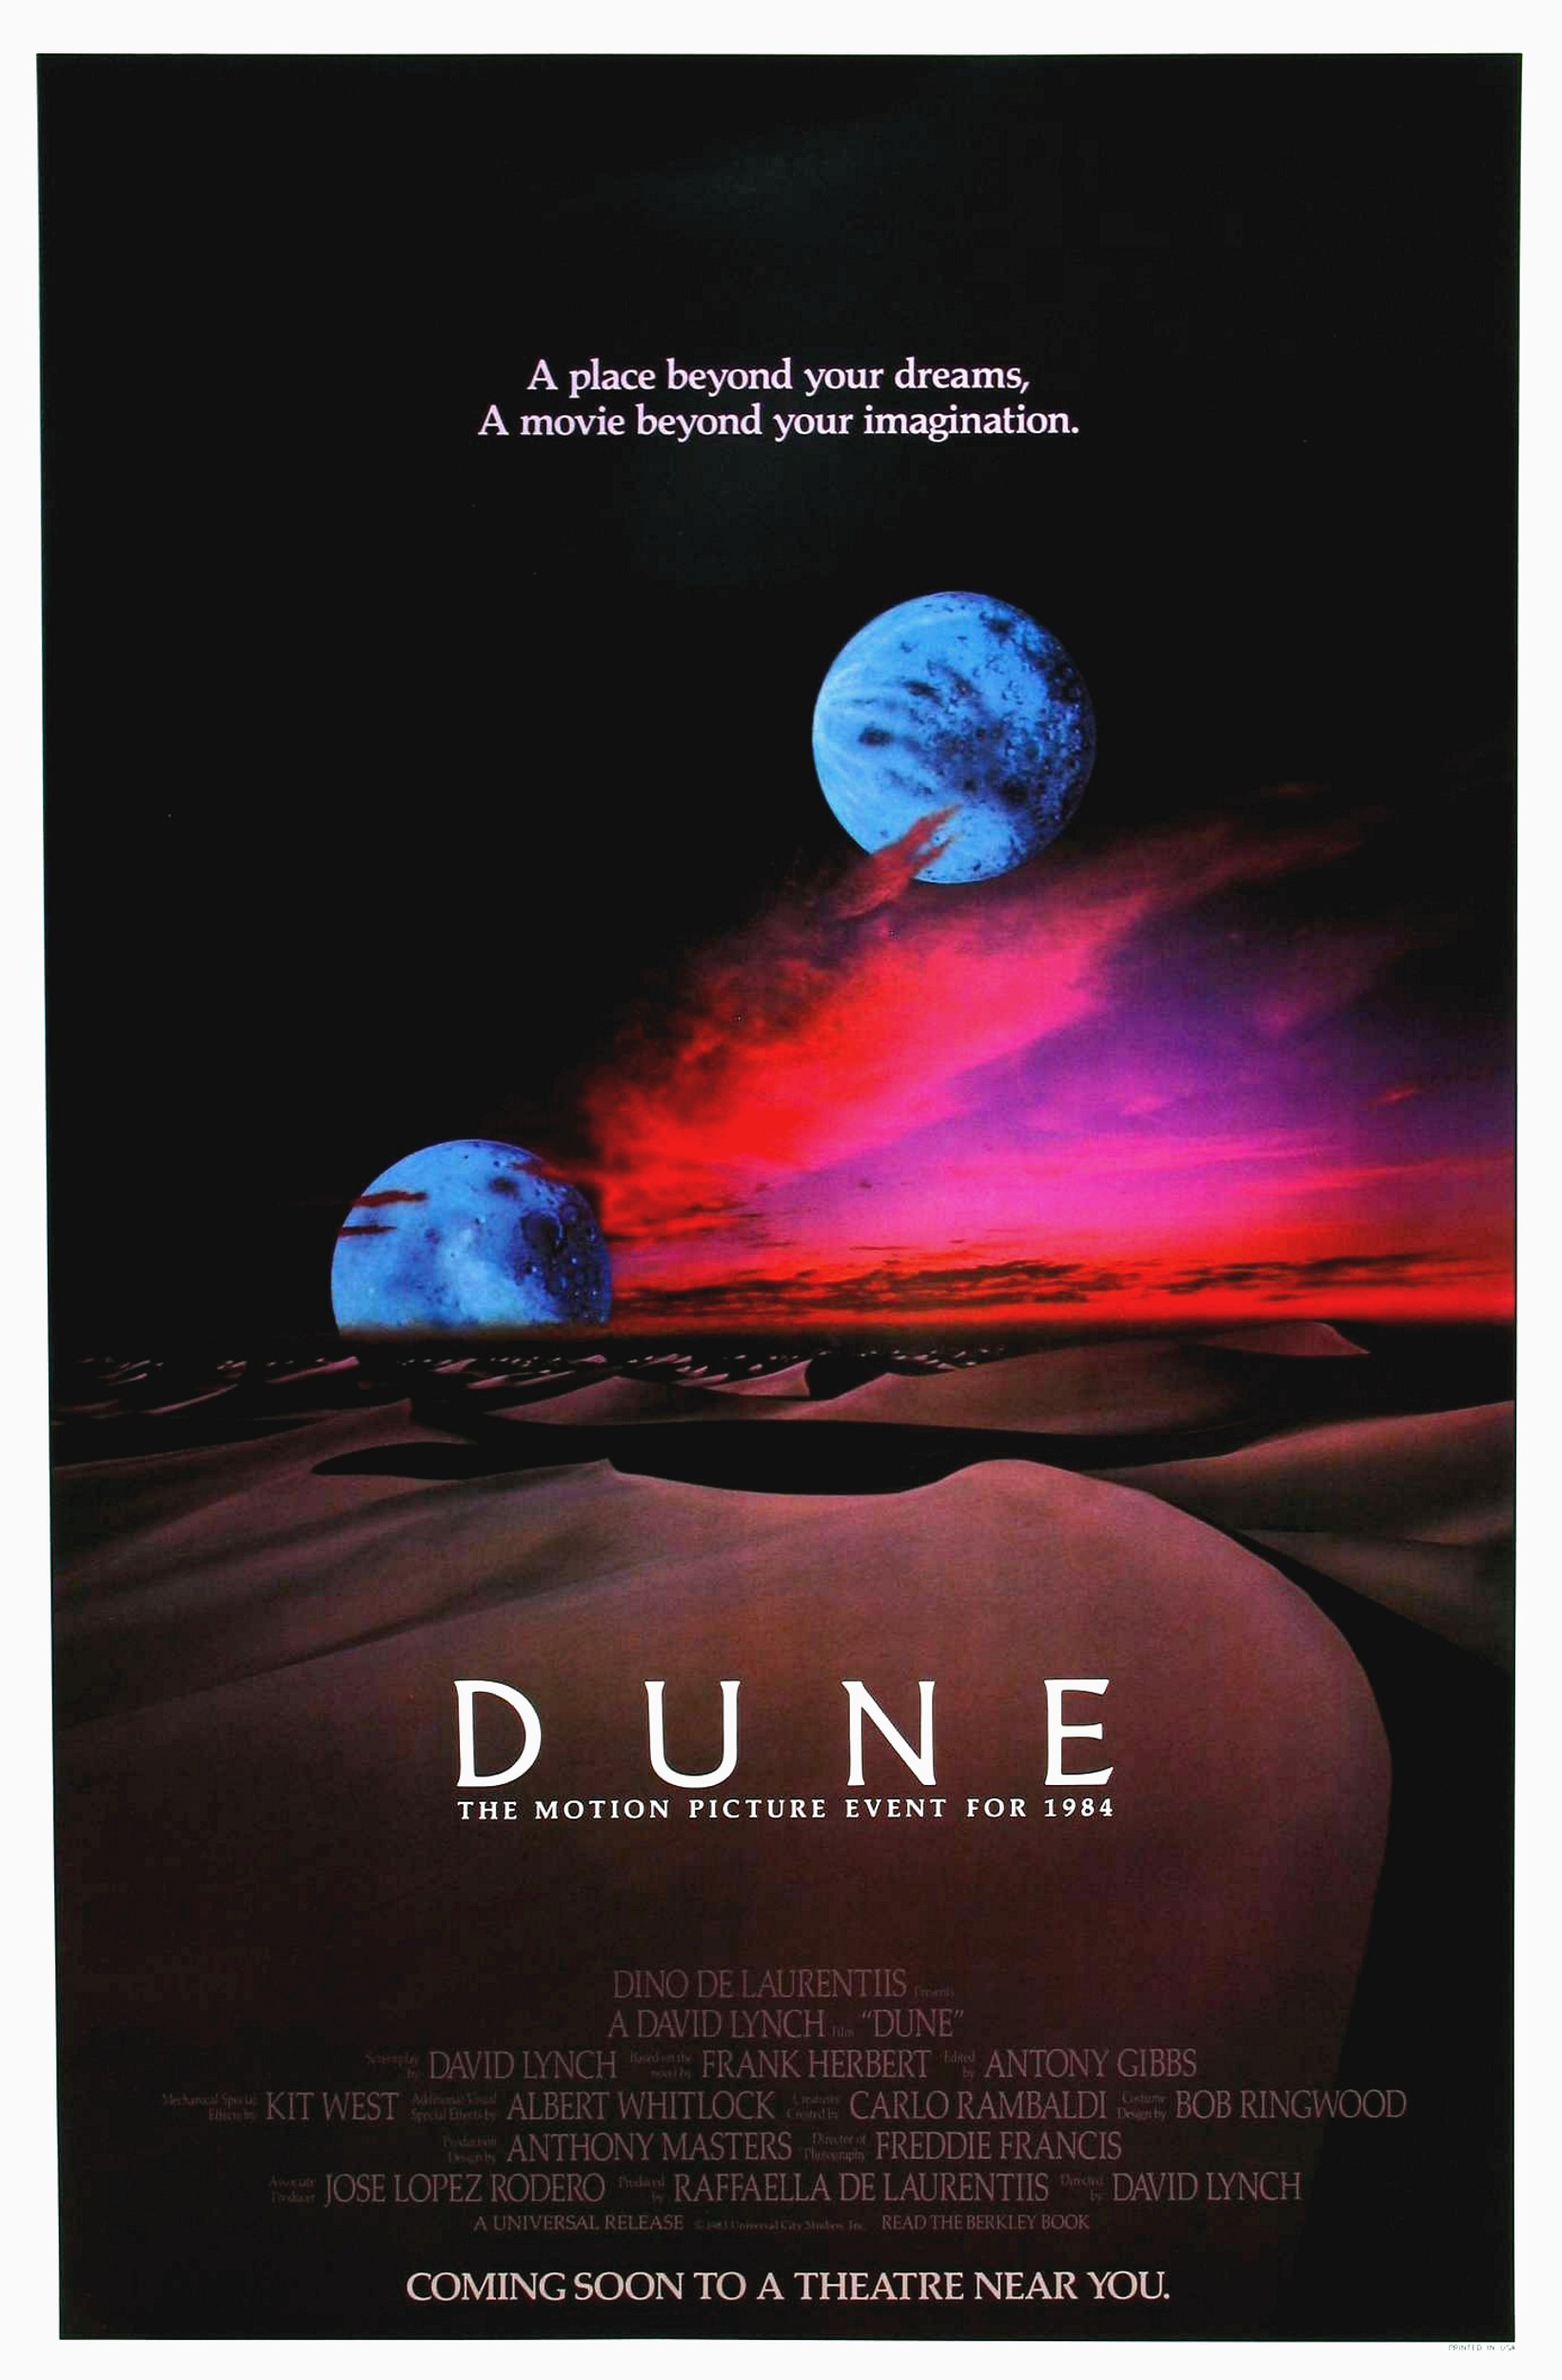 大卫·林奇版《沙丘》上映40周年 北美院线将重映封面图